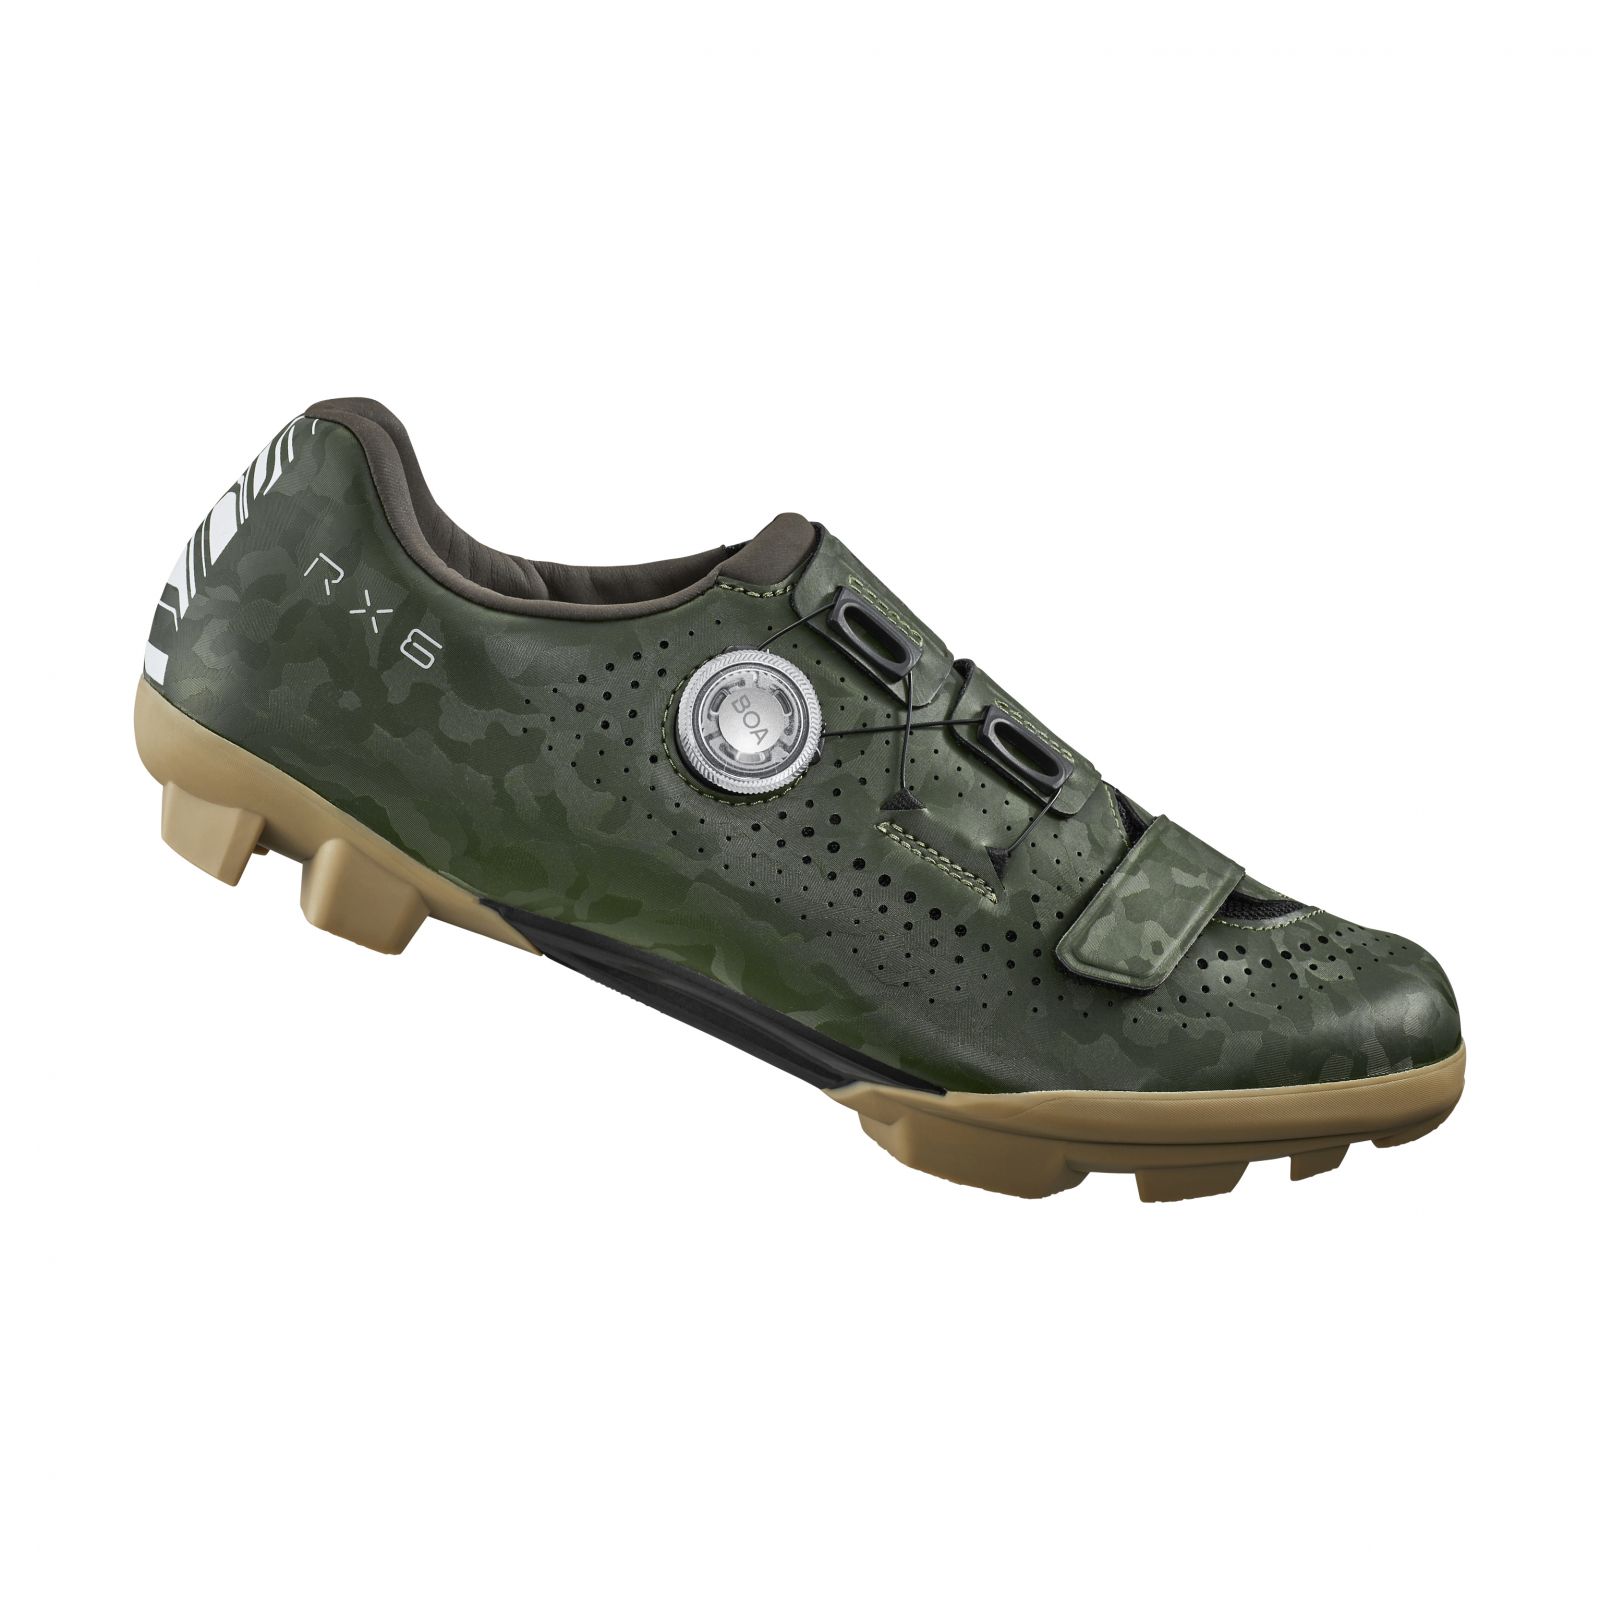 SHIMANO gravel obuv SH-RX600, pánská, zelená, 48